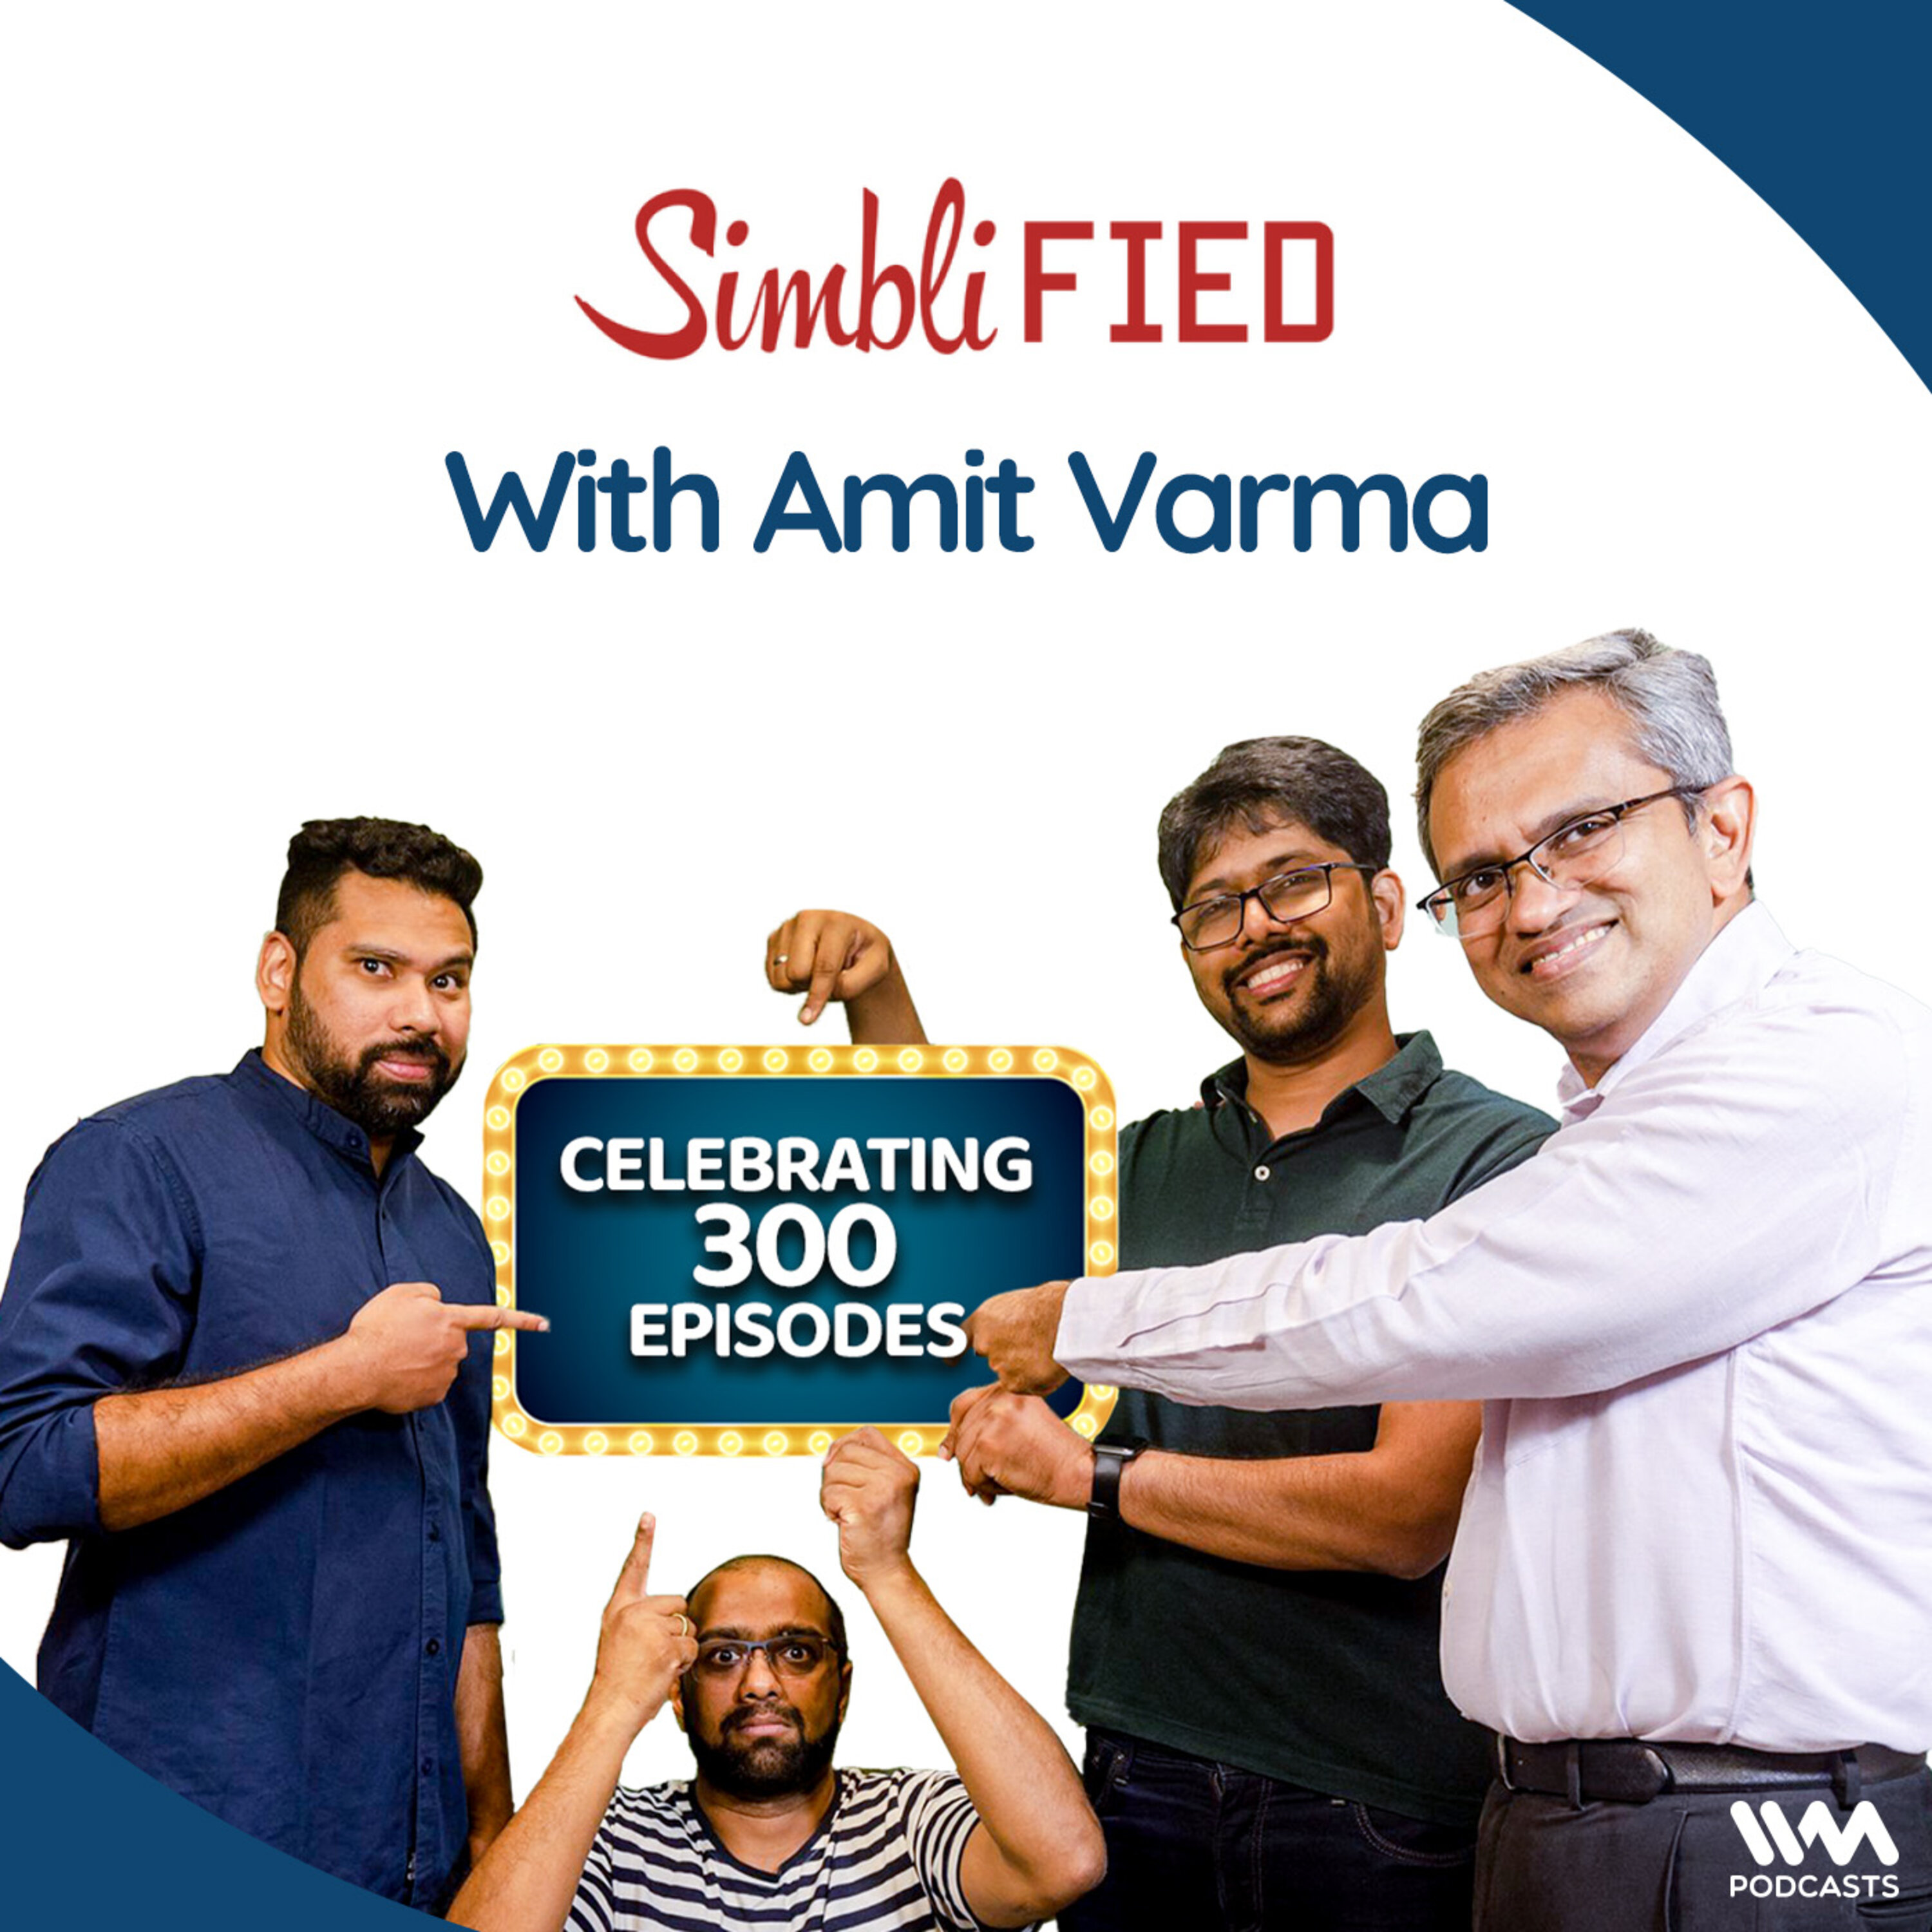 Celebrating 300 episodes, with Amit Varma